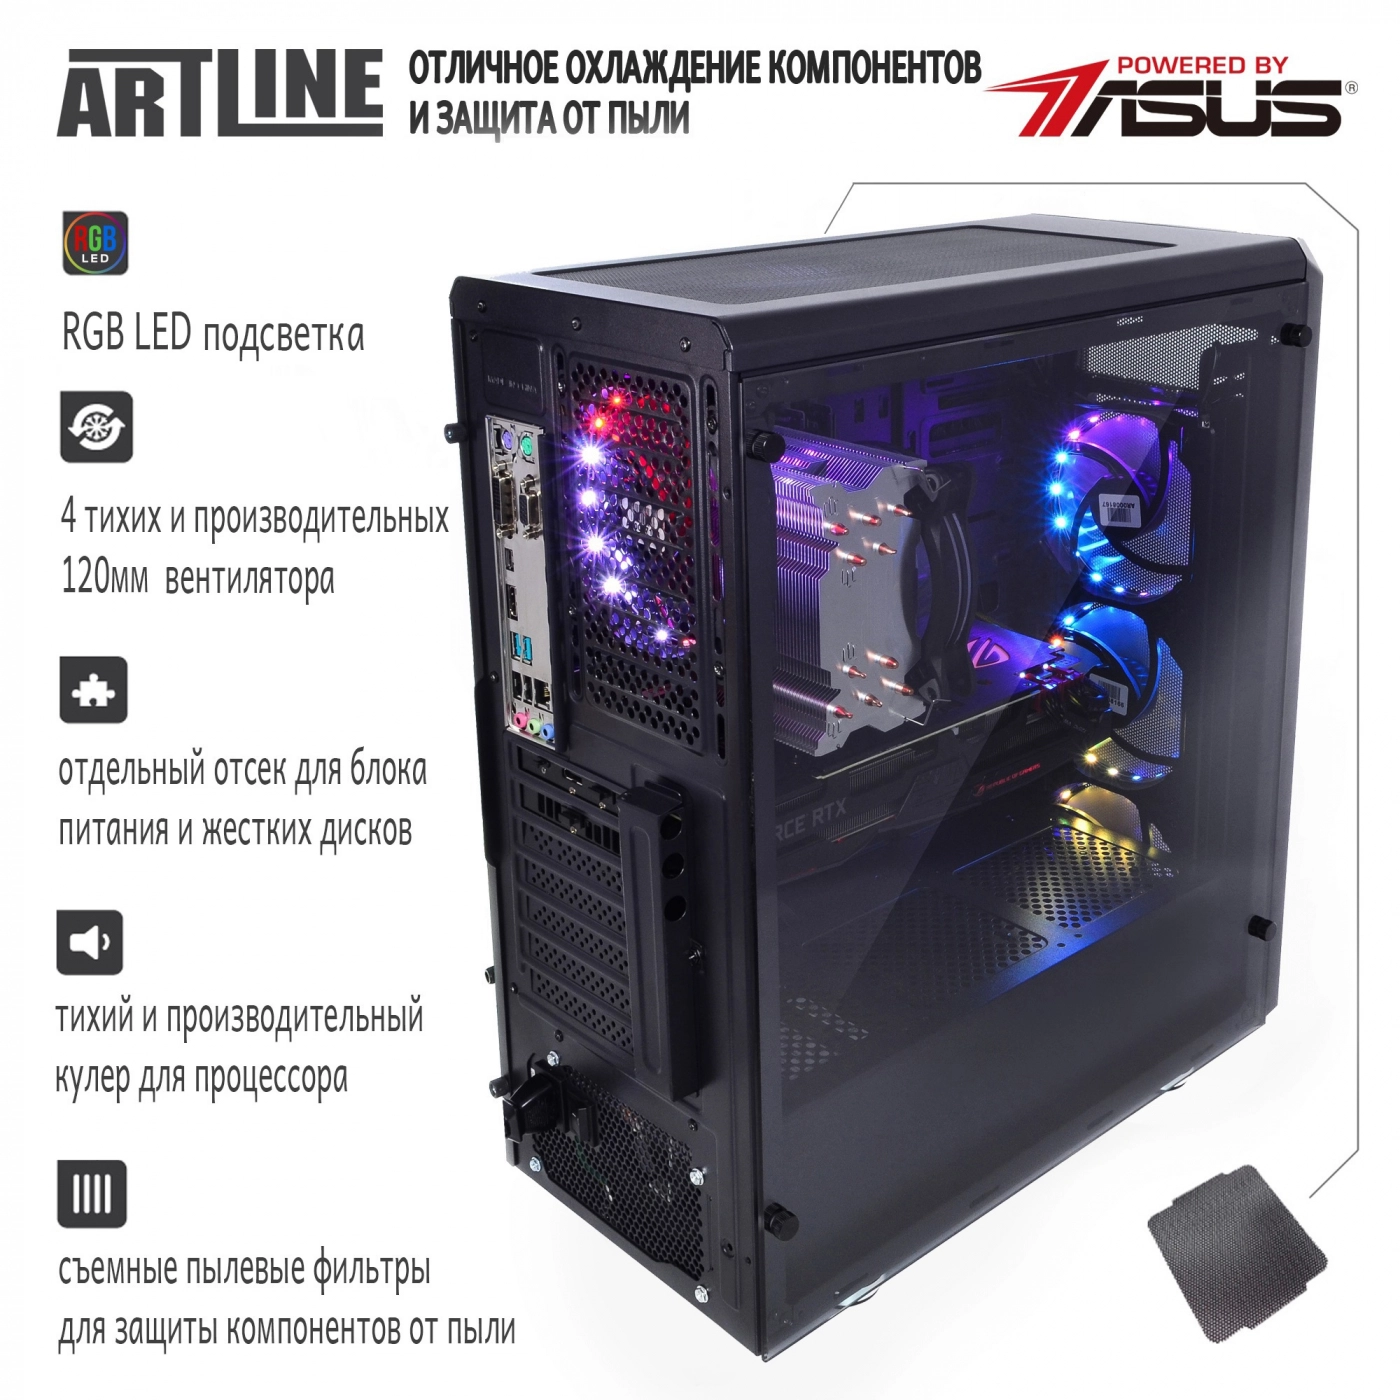 Купить Компьютер ARTLINE Gaming X93v14 - фото 5